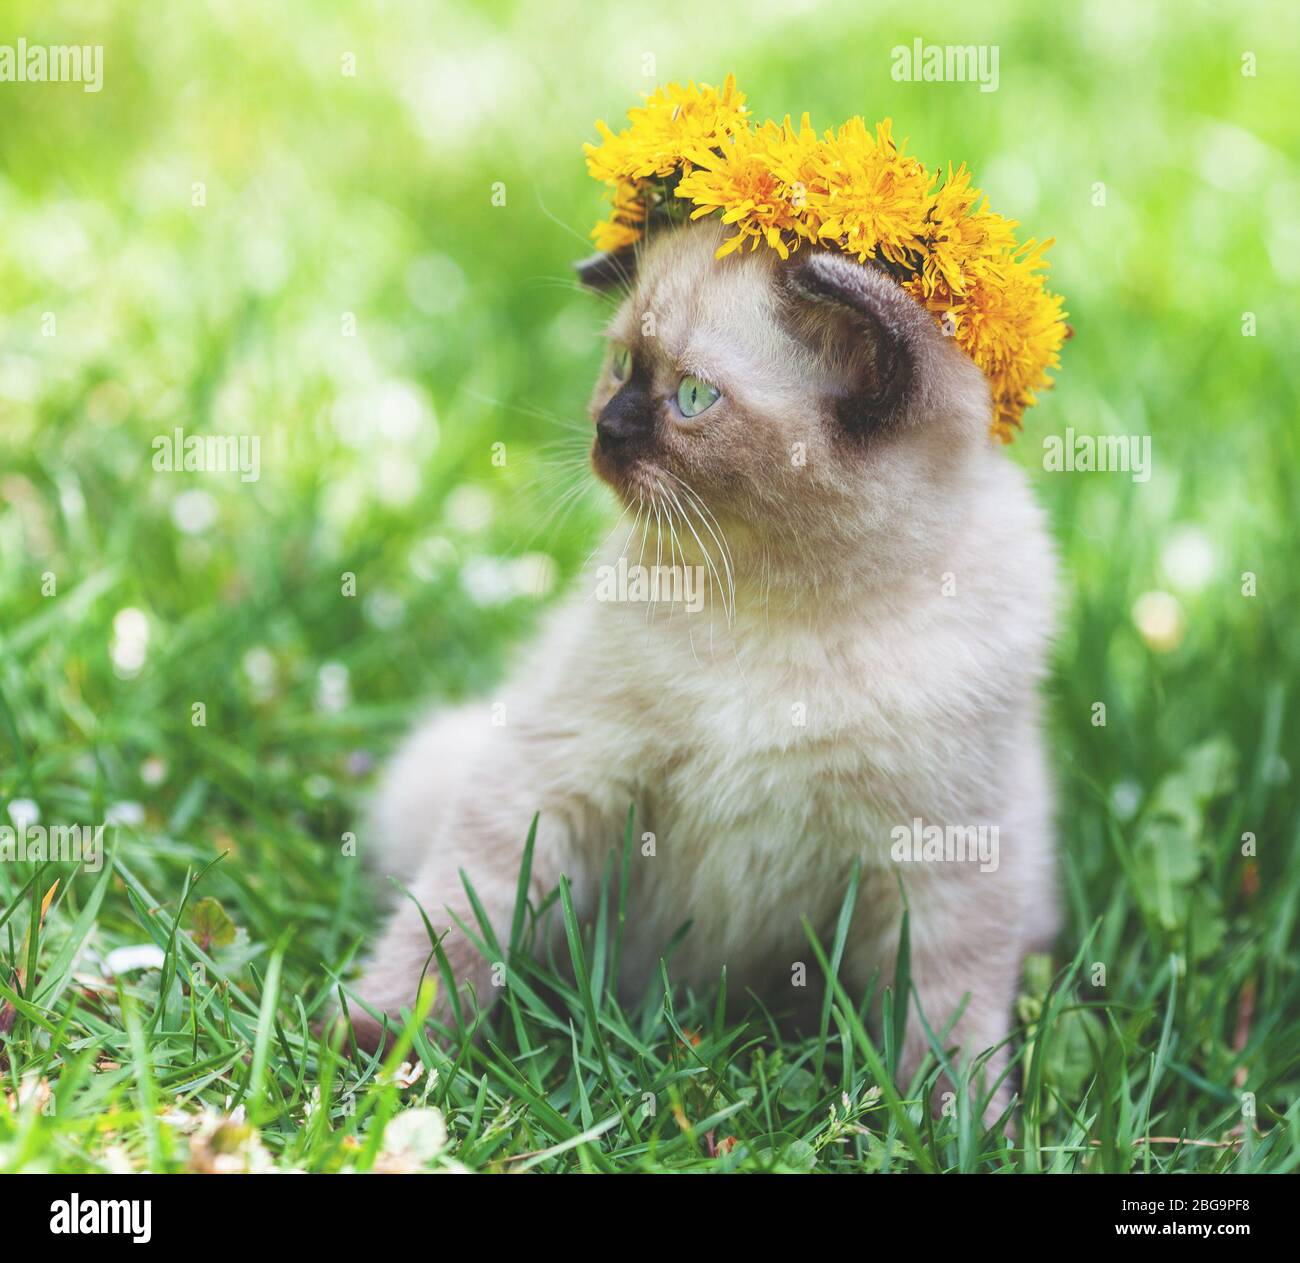 Little kitten crowned dandelion flower chaplet. The kitten sits on the grass Stock Photo